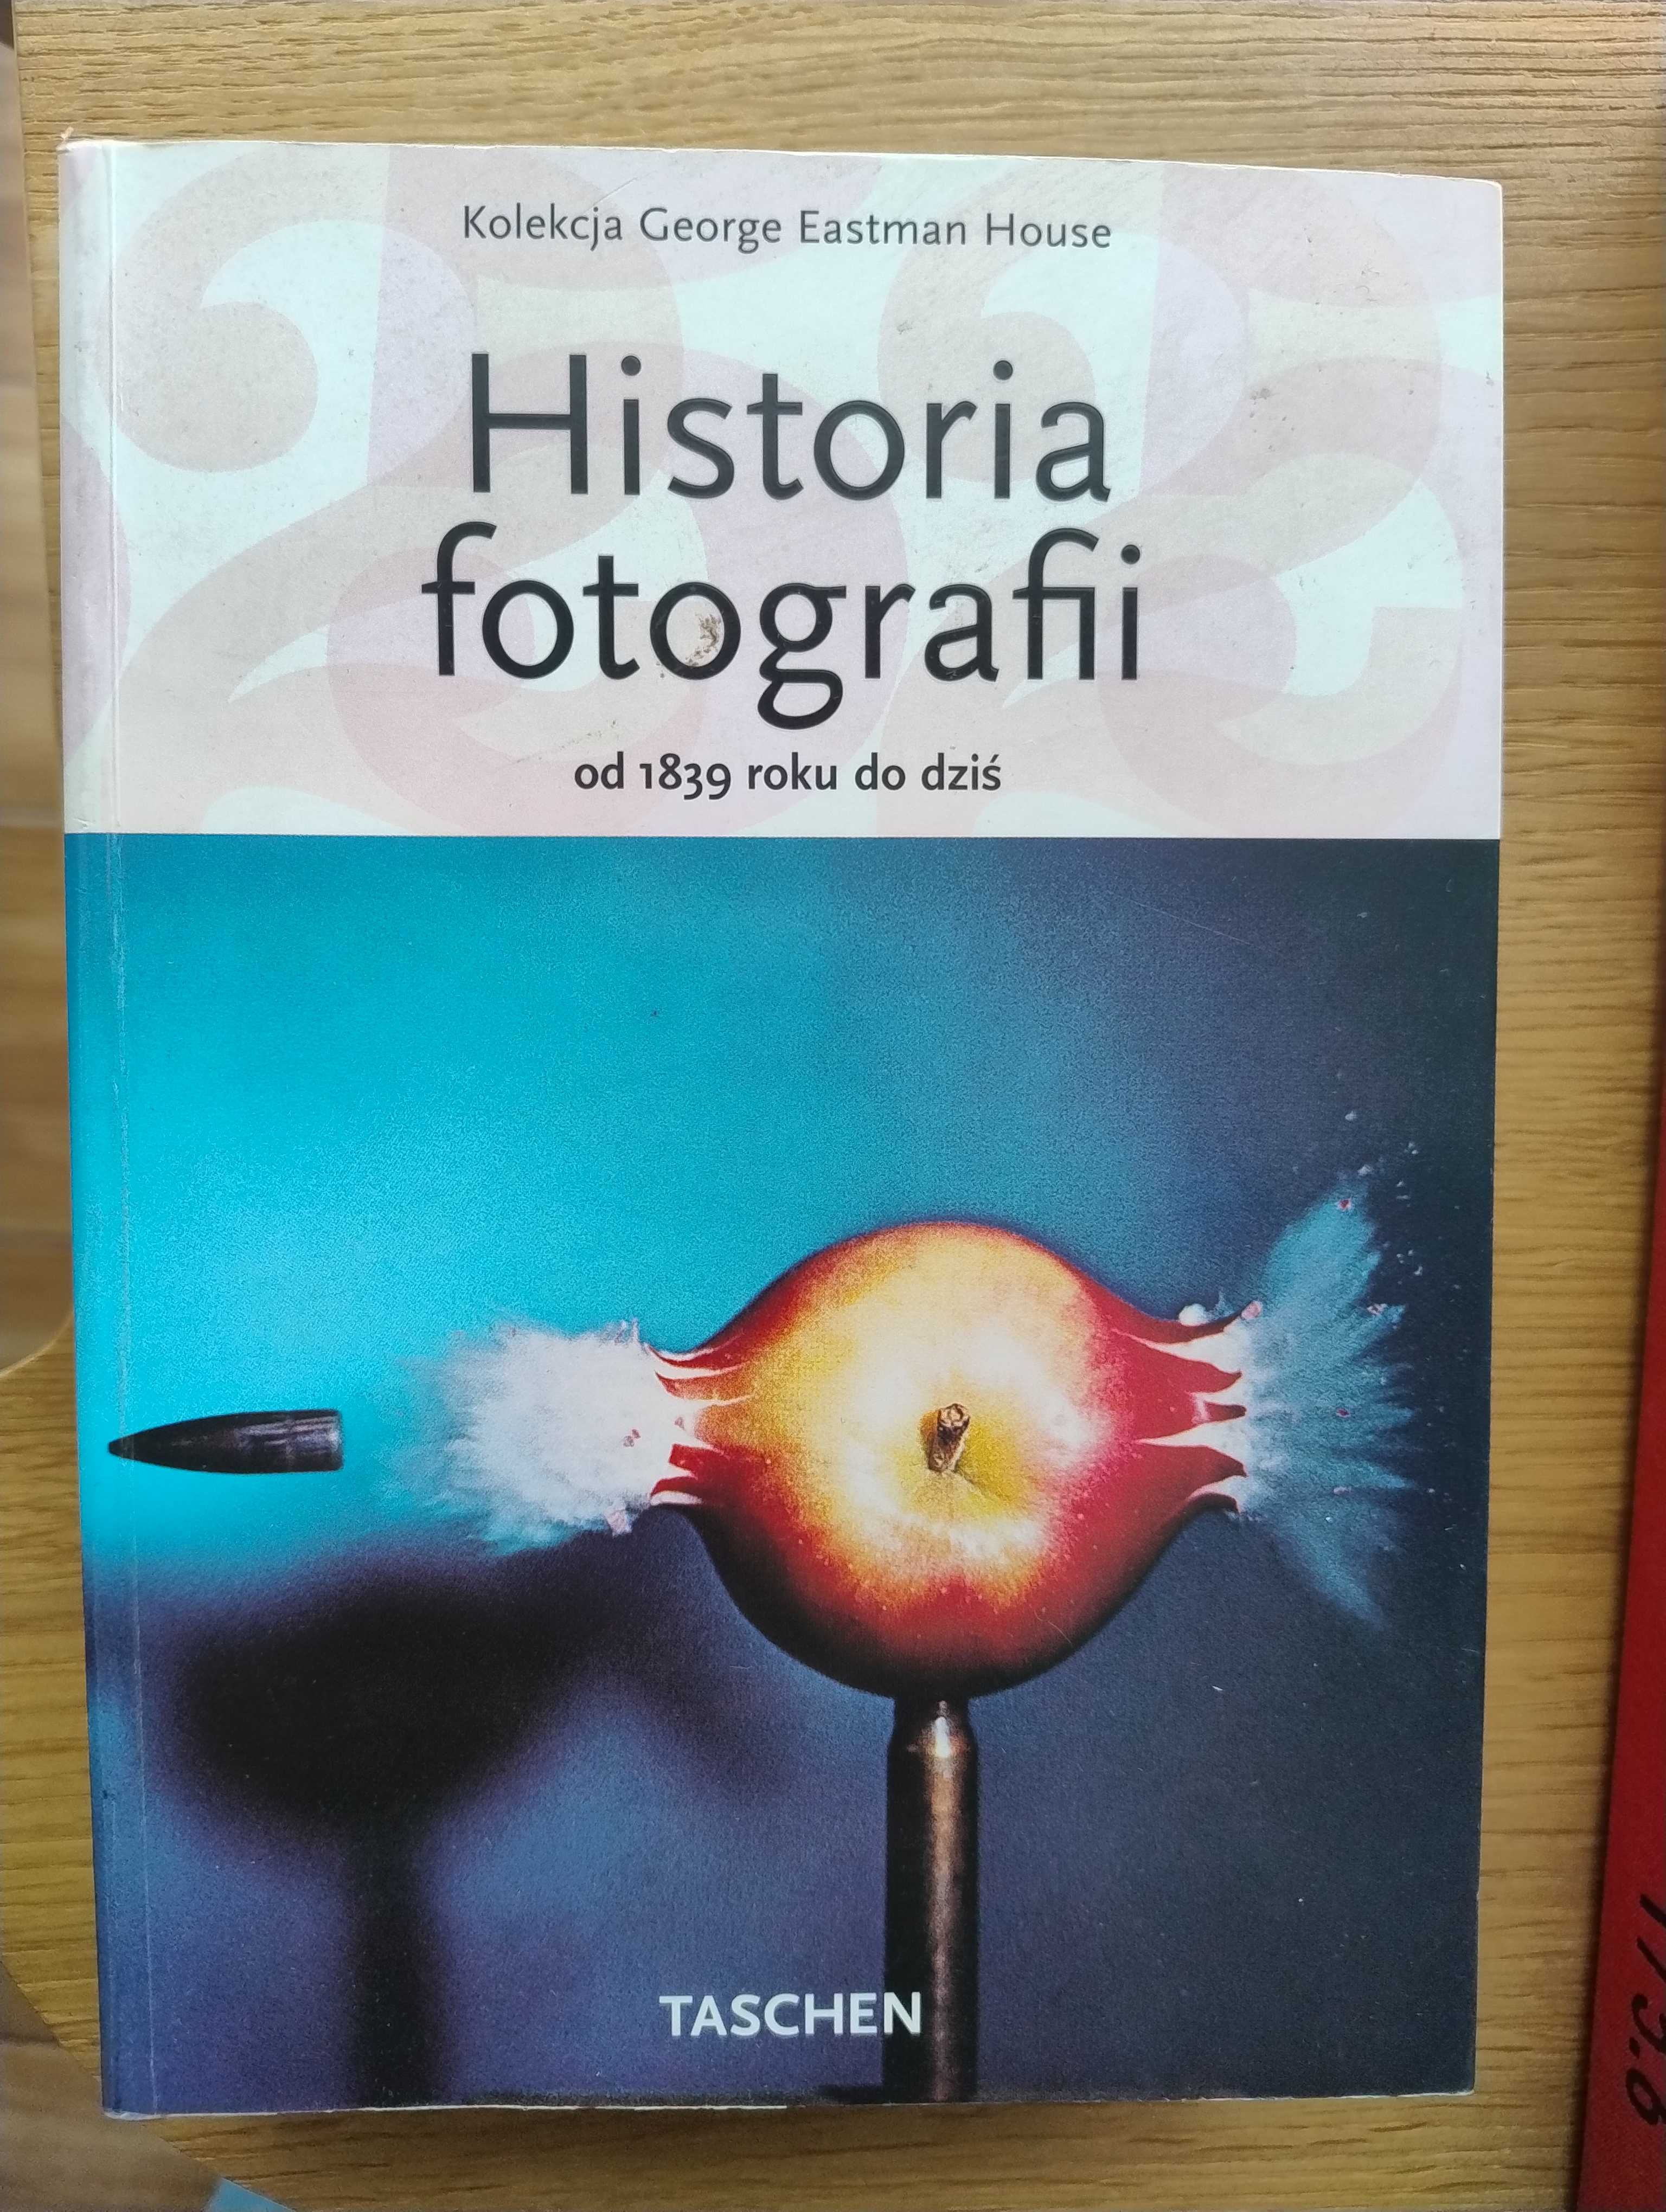 Historia fotografii od 1839 roku do dziś